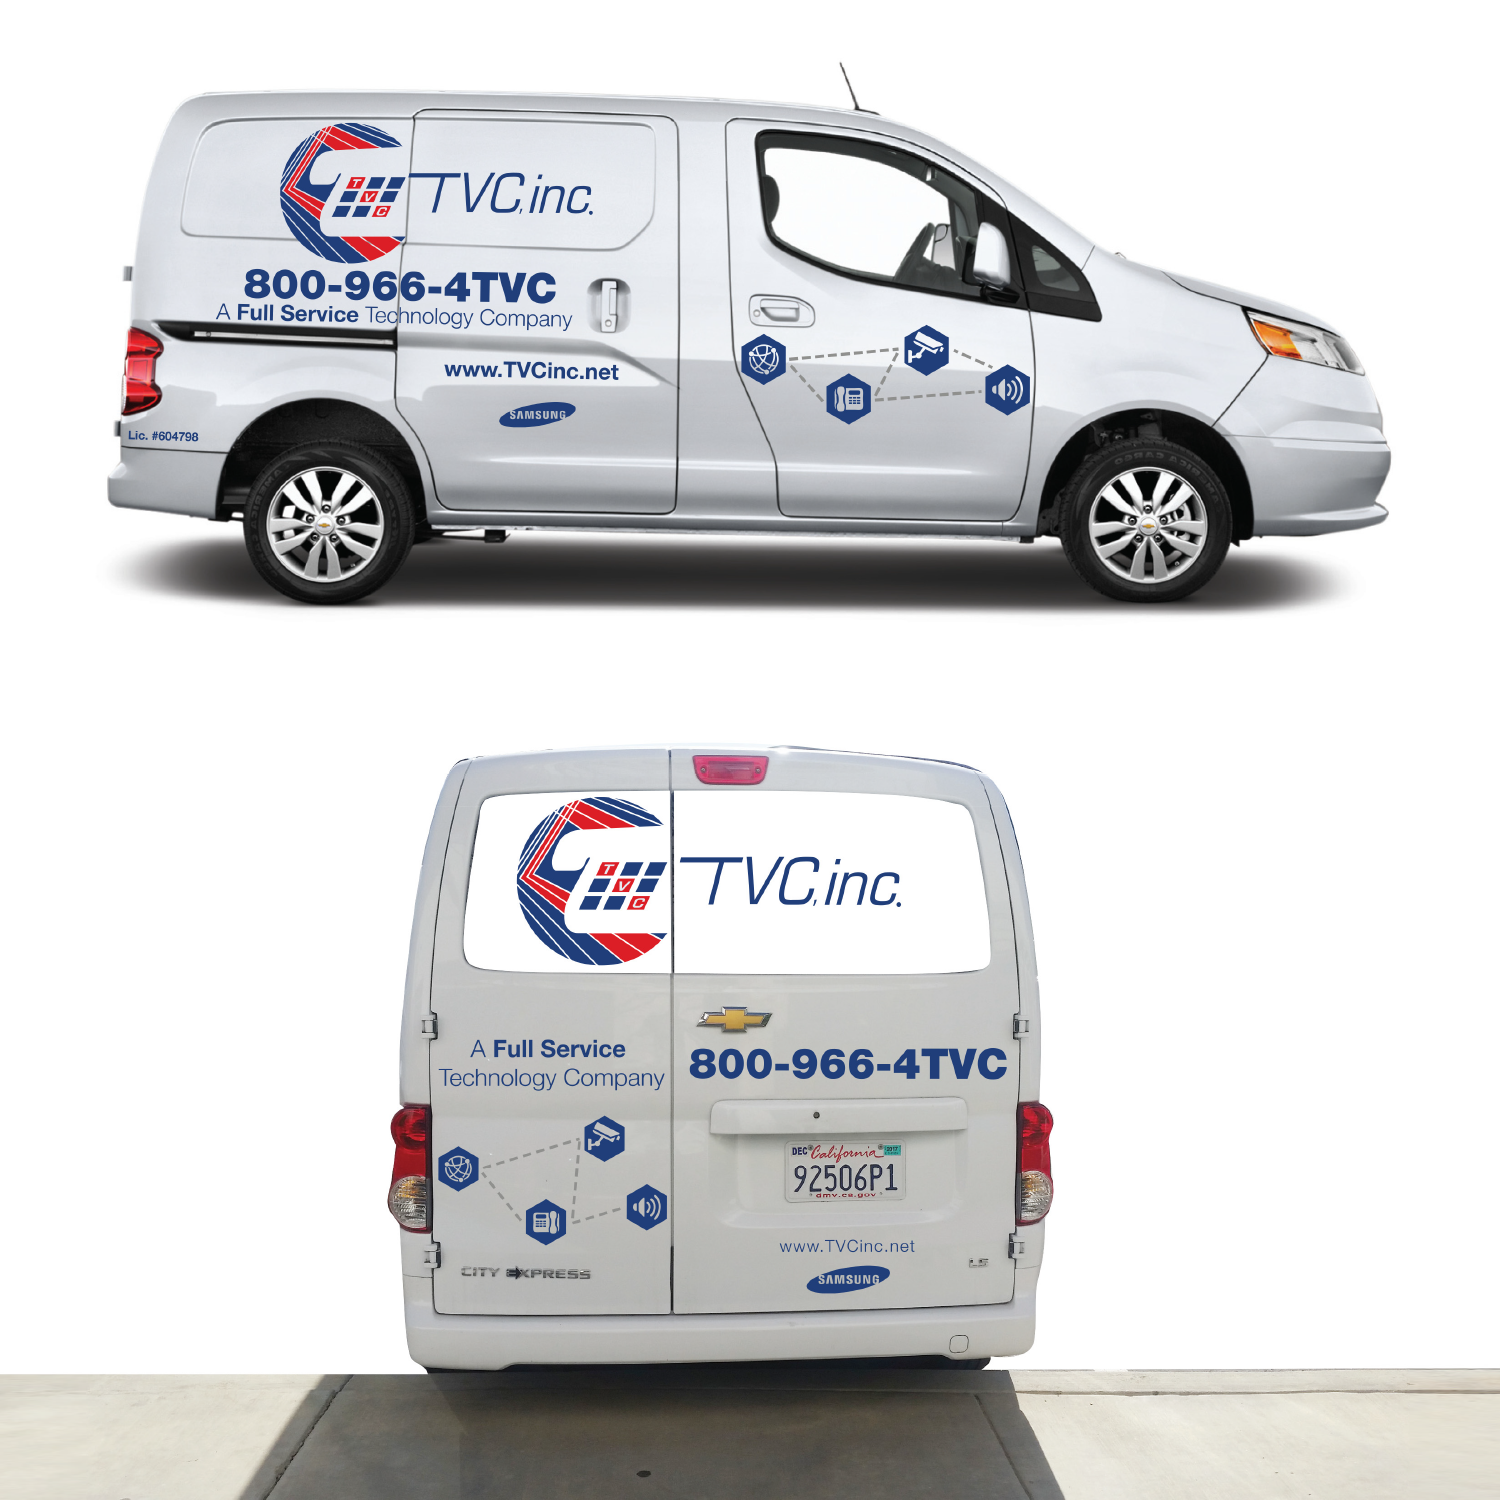 TVC Vehicle Design